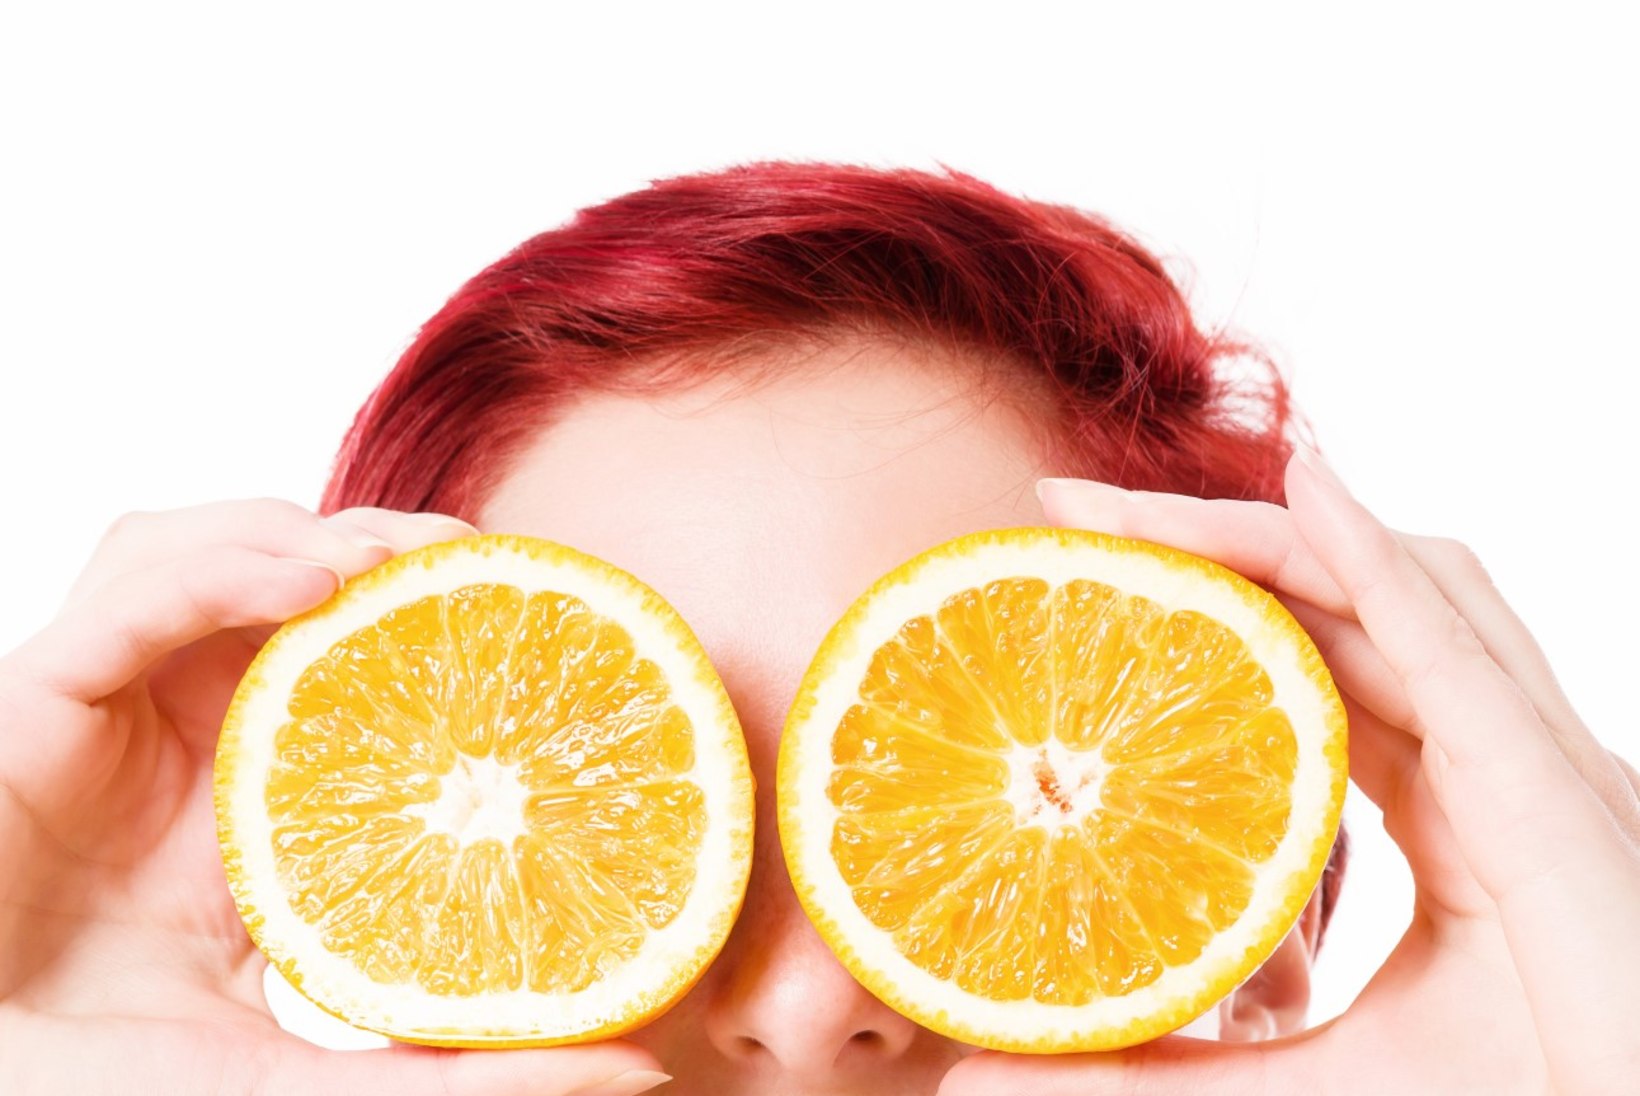 Neli põhjust, miks oma tervise nimel rohkem apelsine süüa